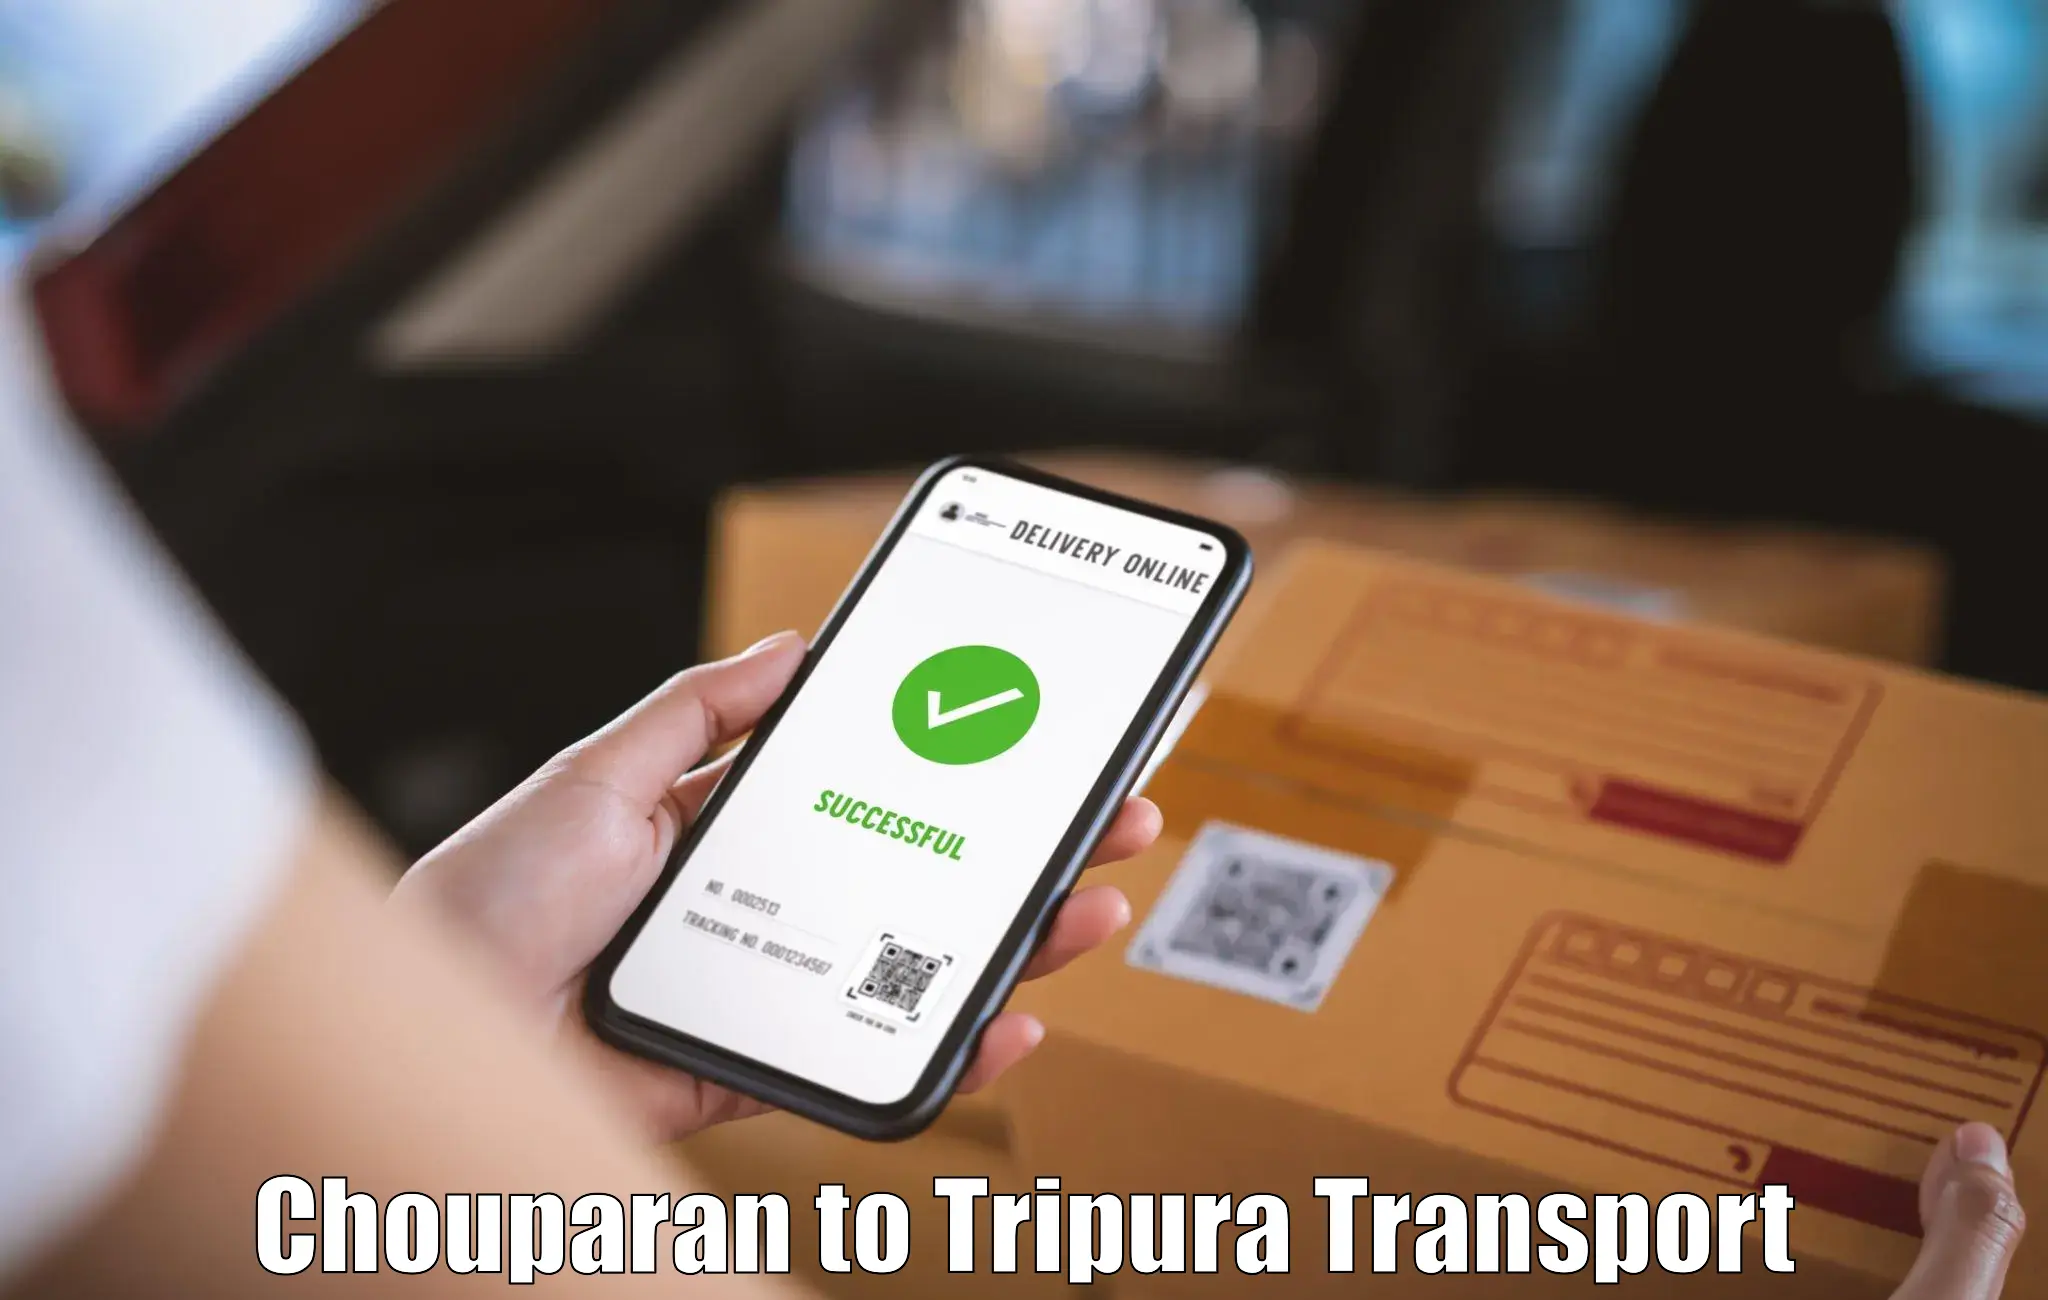 Transport in sharing Chouparan to Dhalai